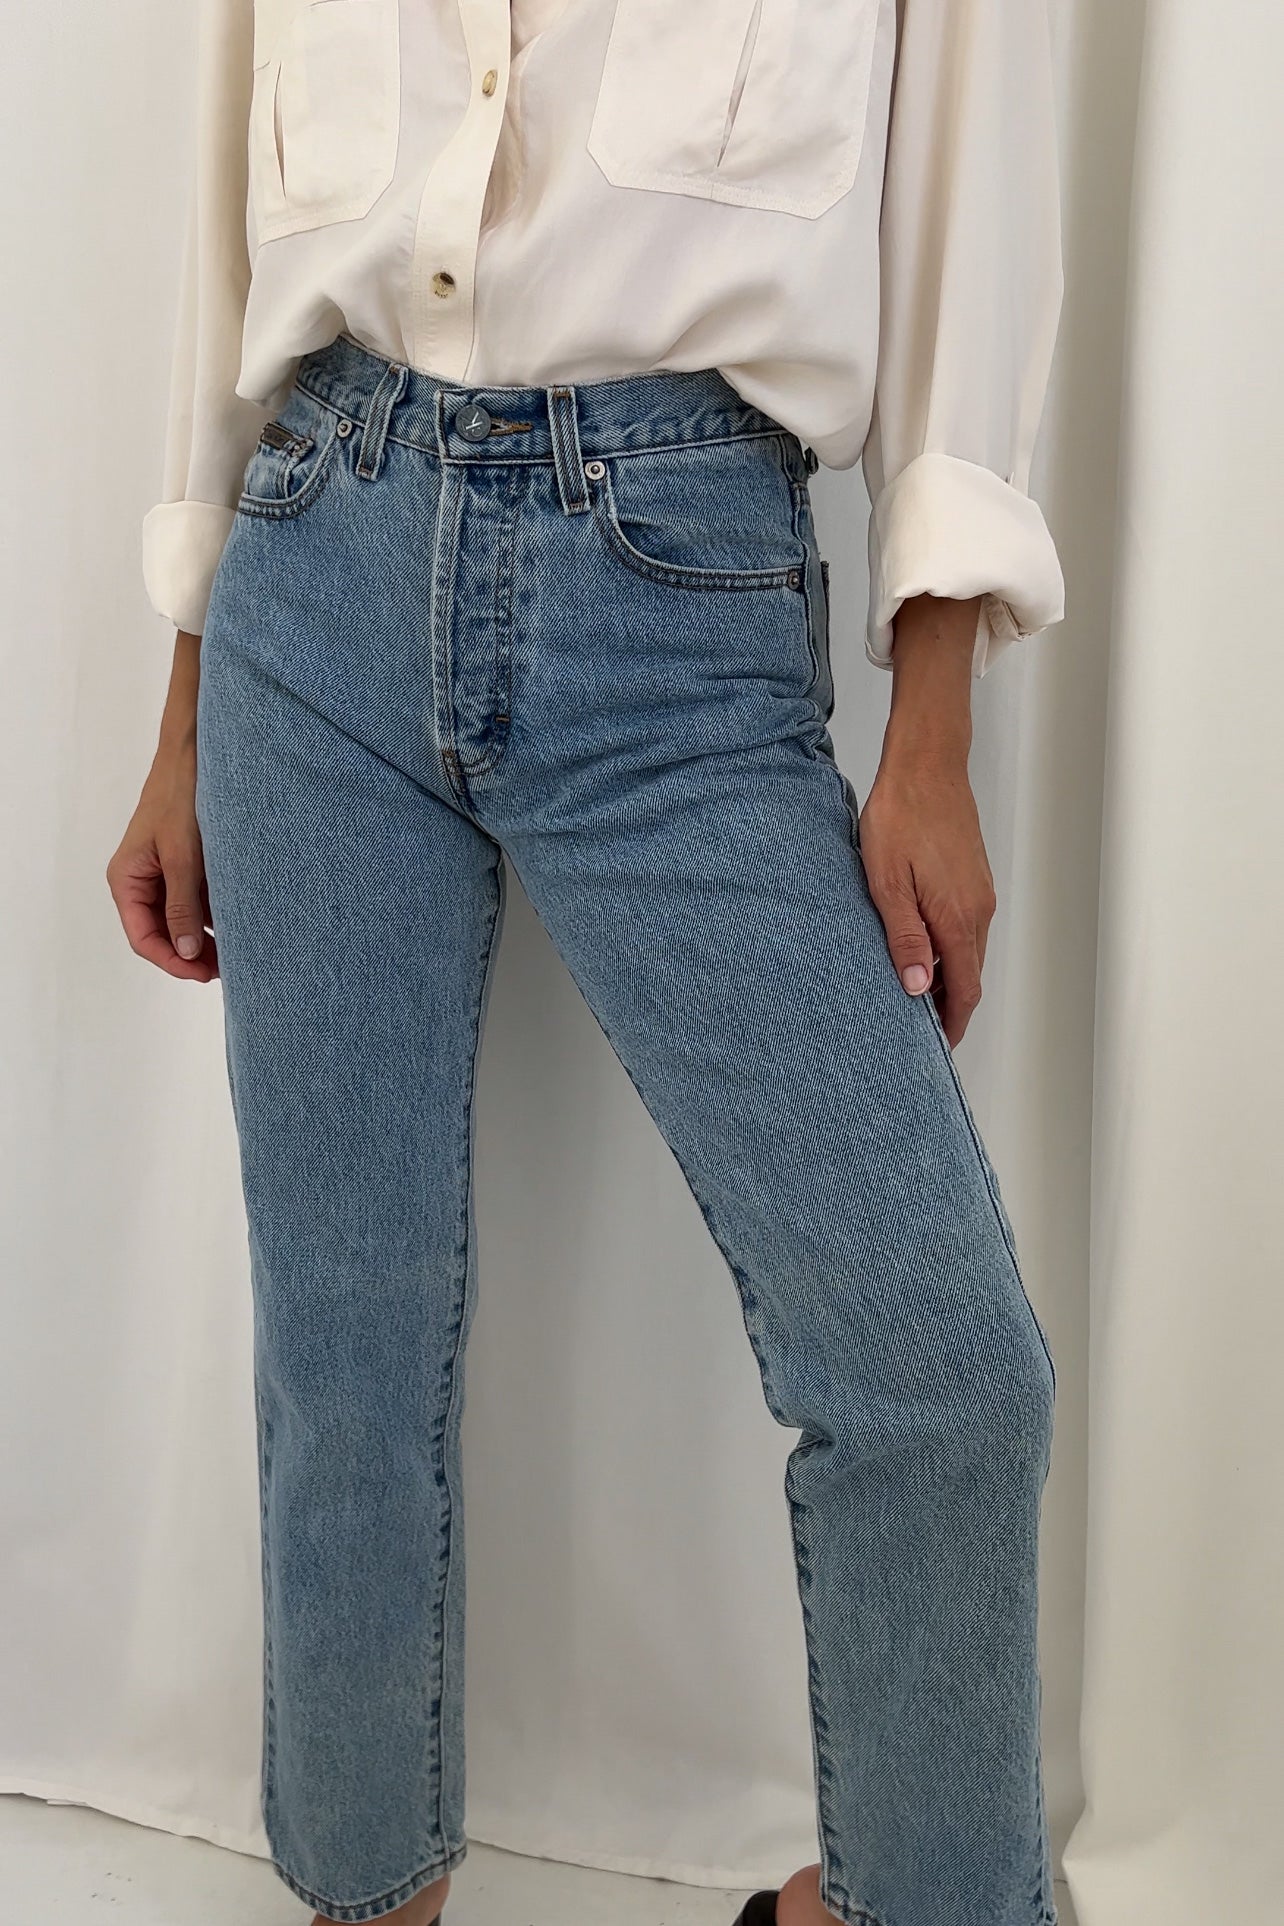 Vintage 90s Light Wash Calvin Klein Denim Jeans